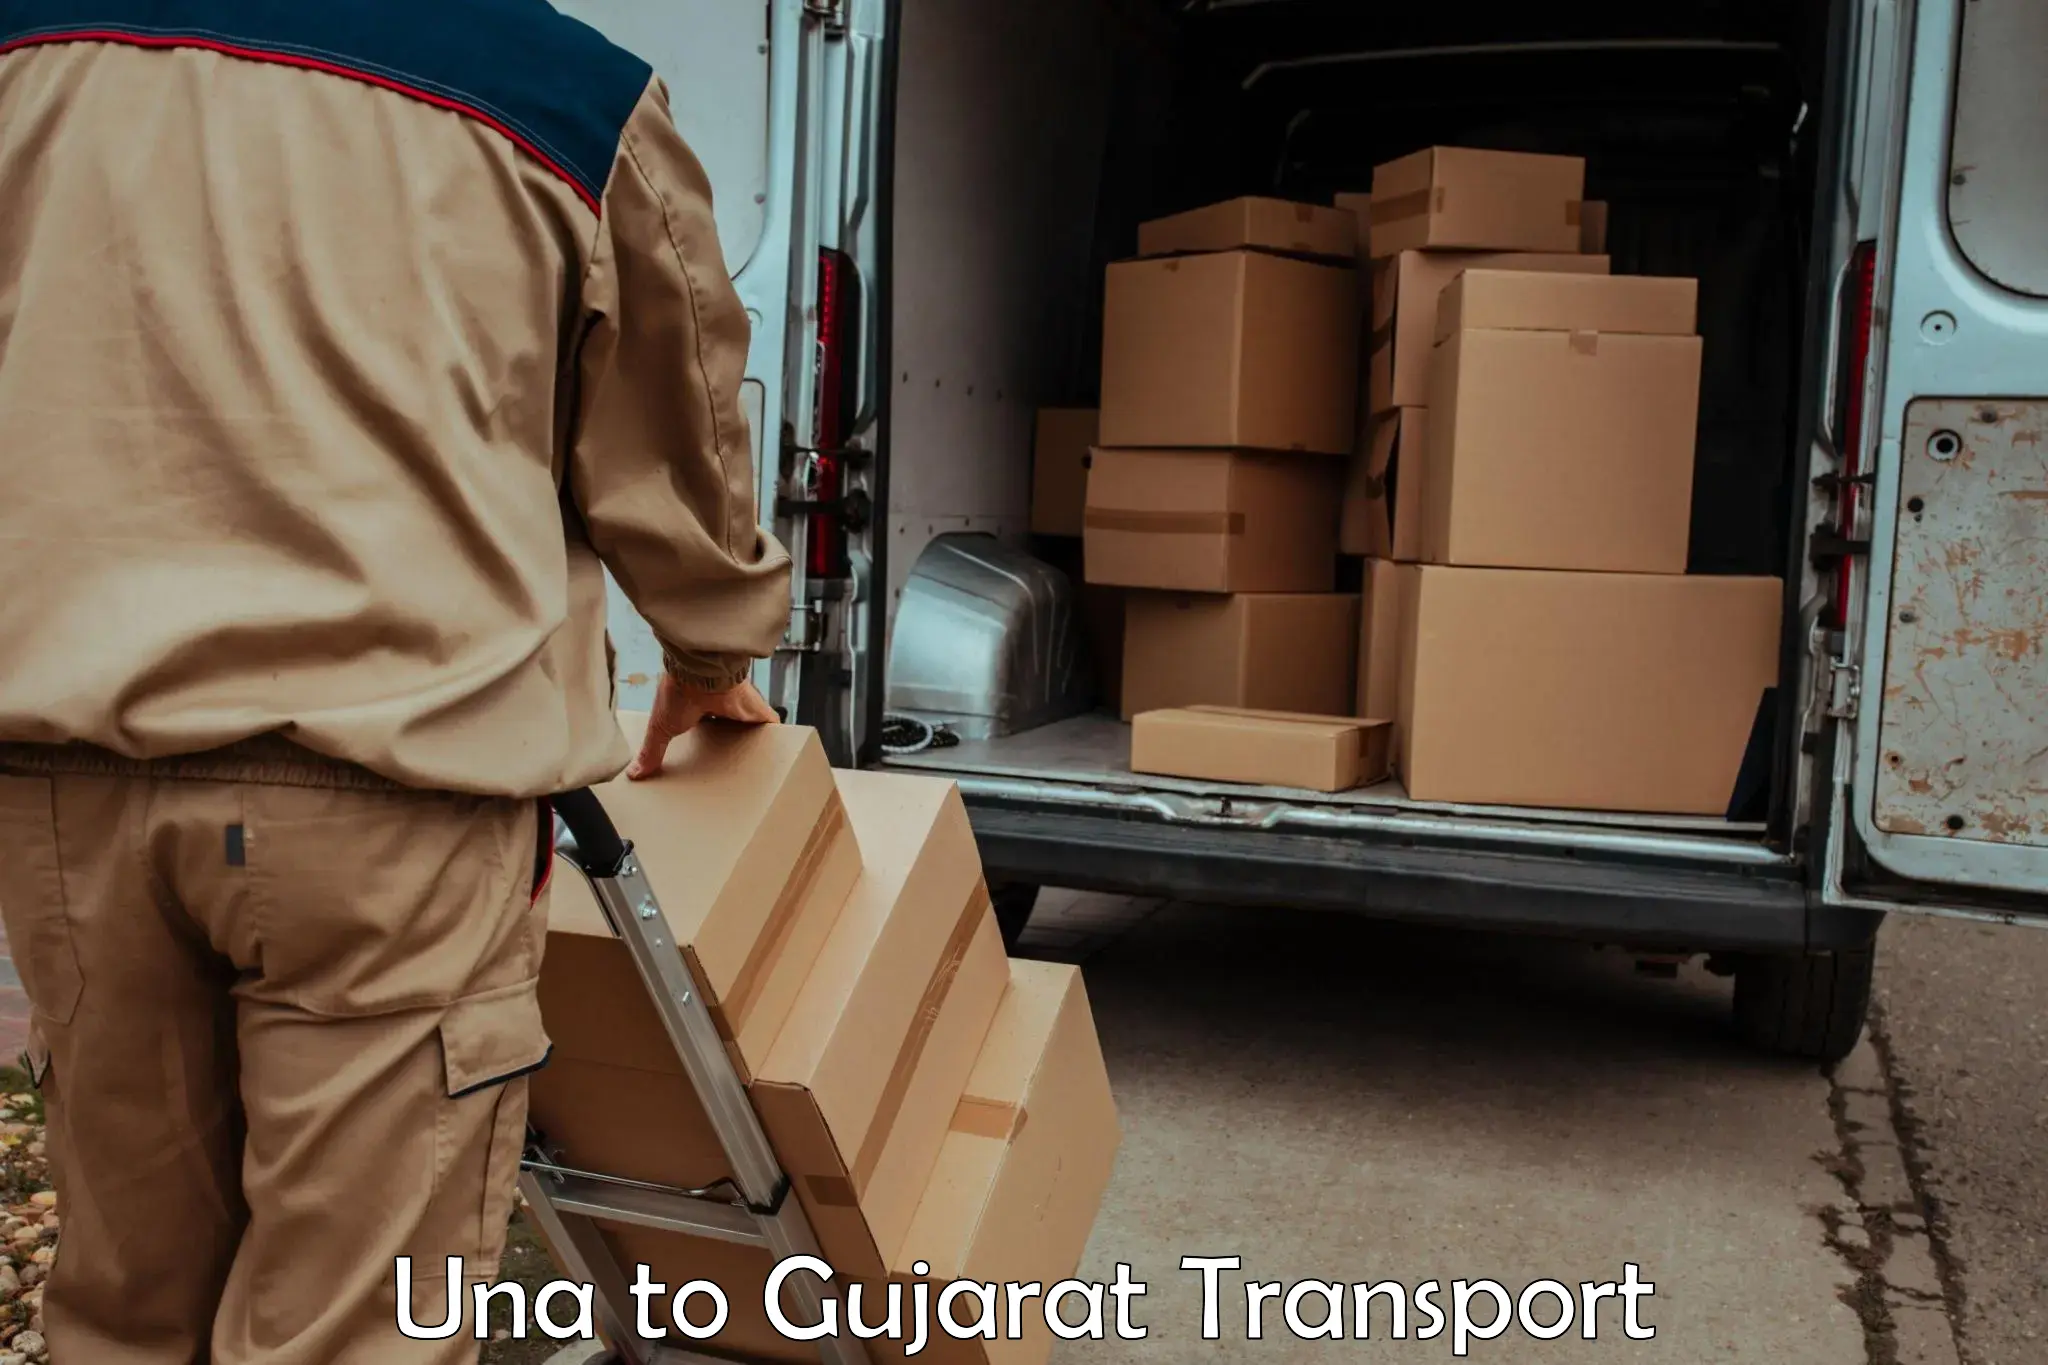 Pick up transport service Una to Gujarat